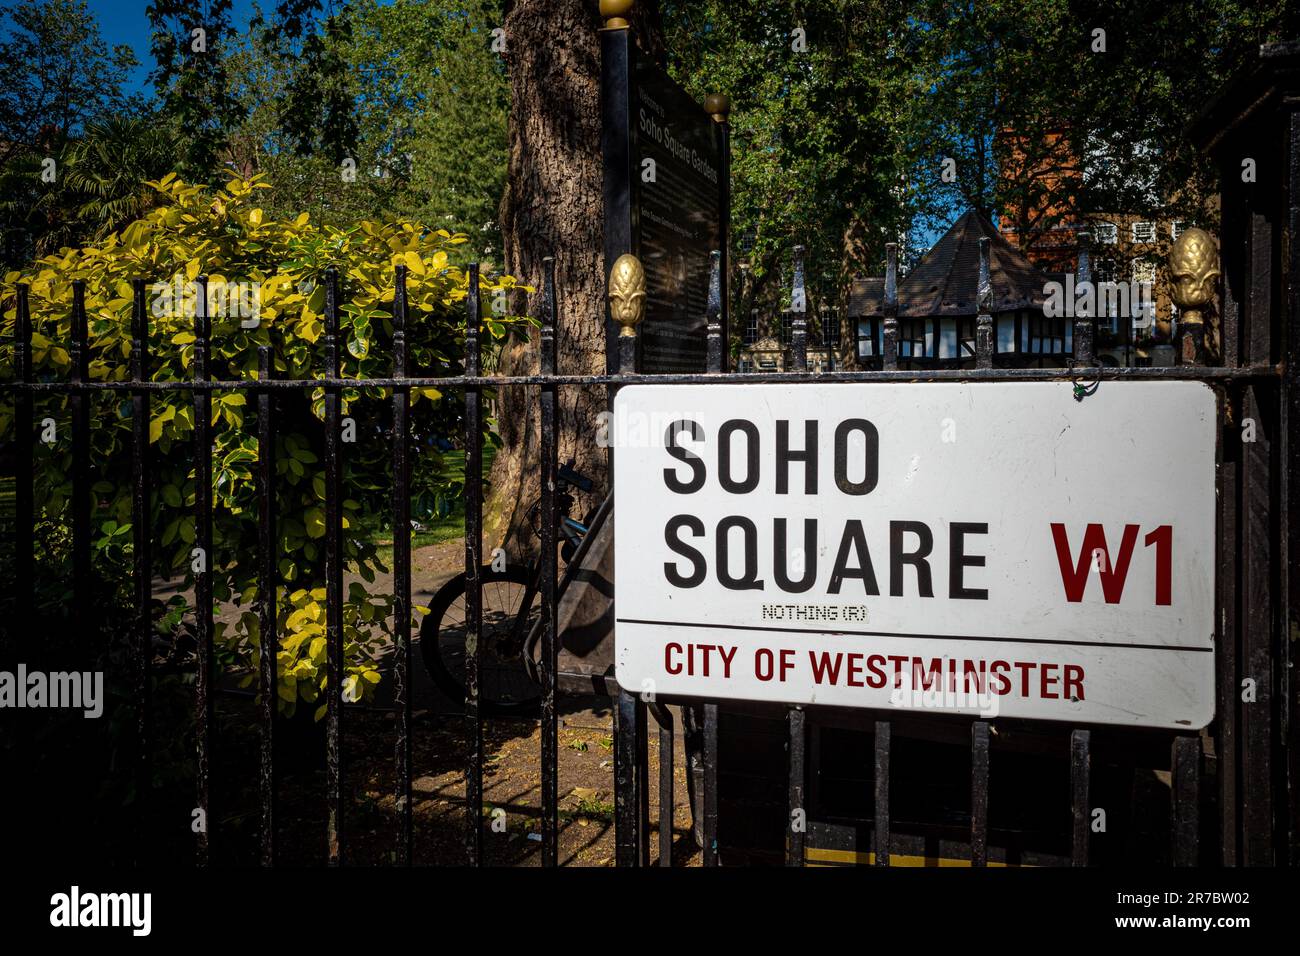 Soho Square W1-Soho Square ist ein grüner Platz in Londons Soho Entertainment District zurückgehend bis 1681 - Londoner Stadtteil Soho Straßenschilder Stockfoto